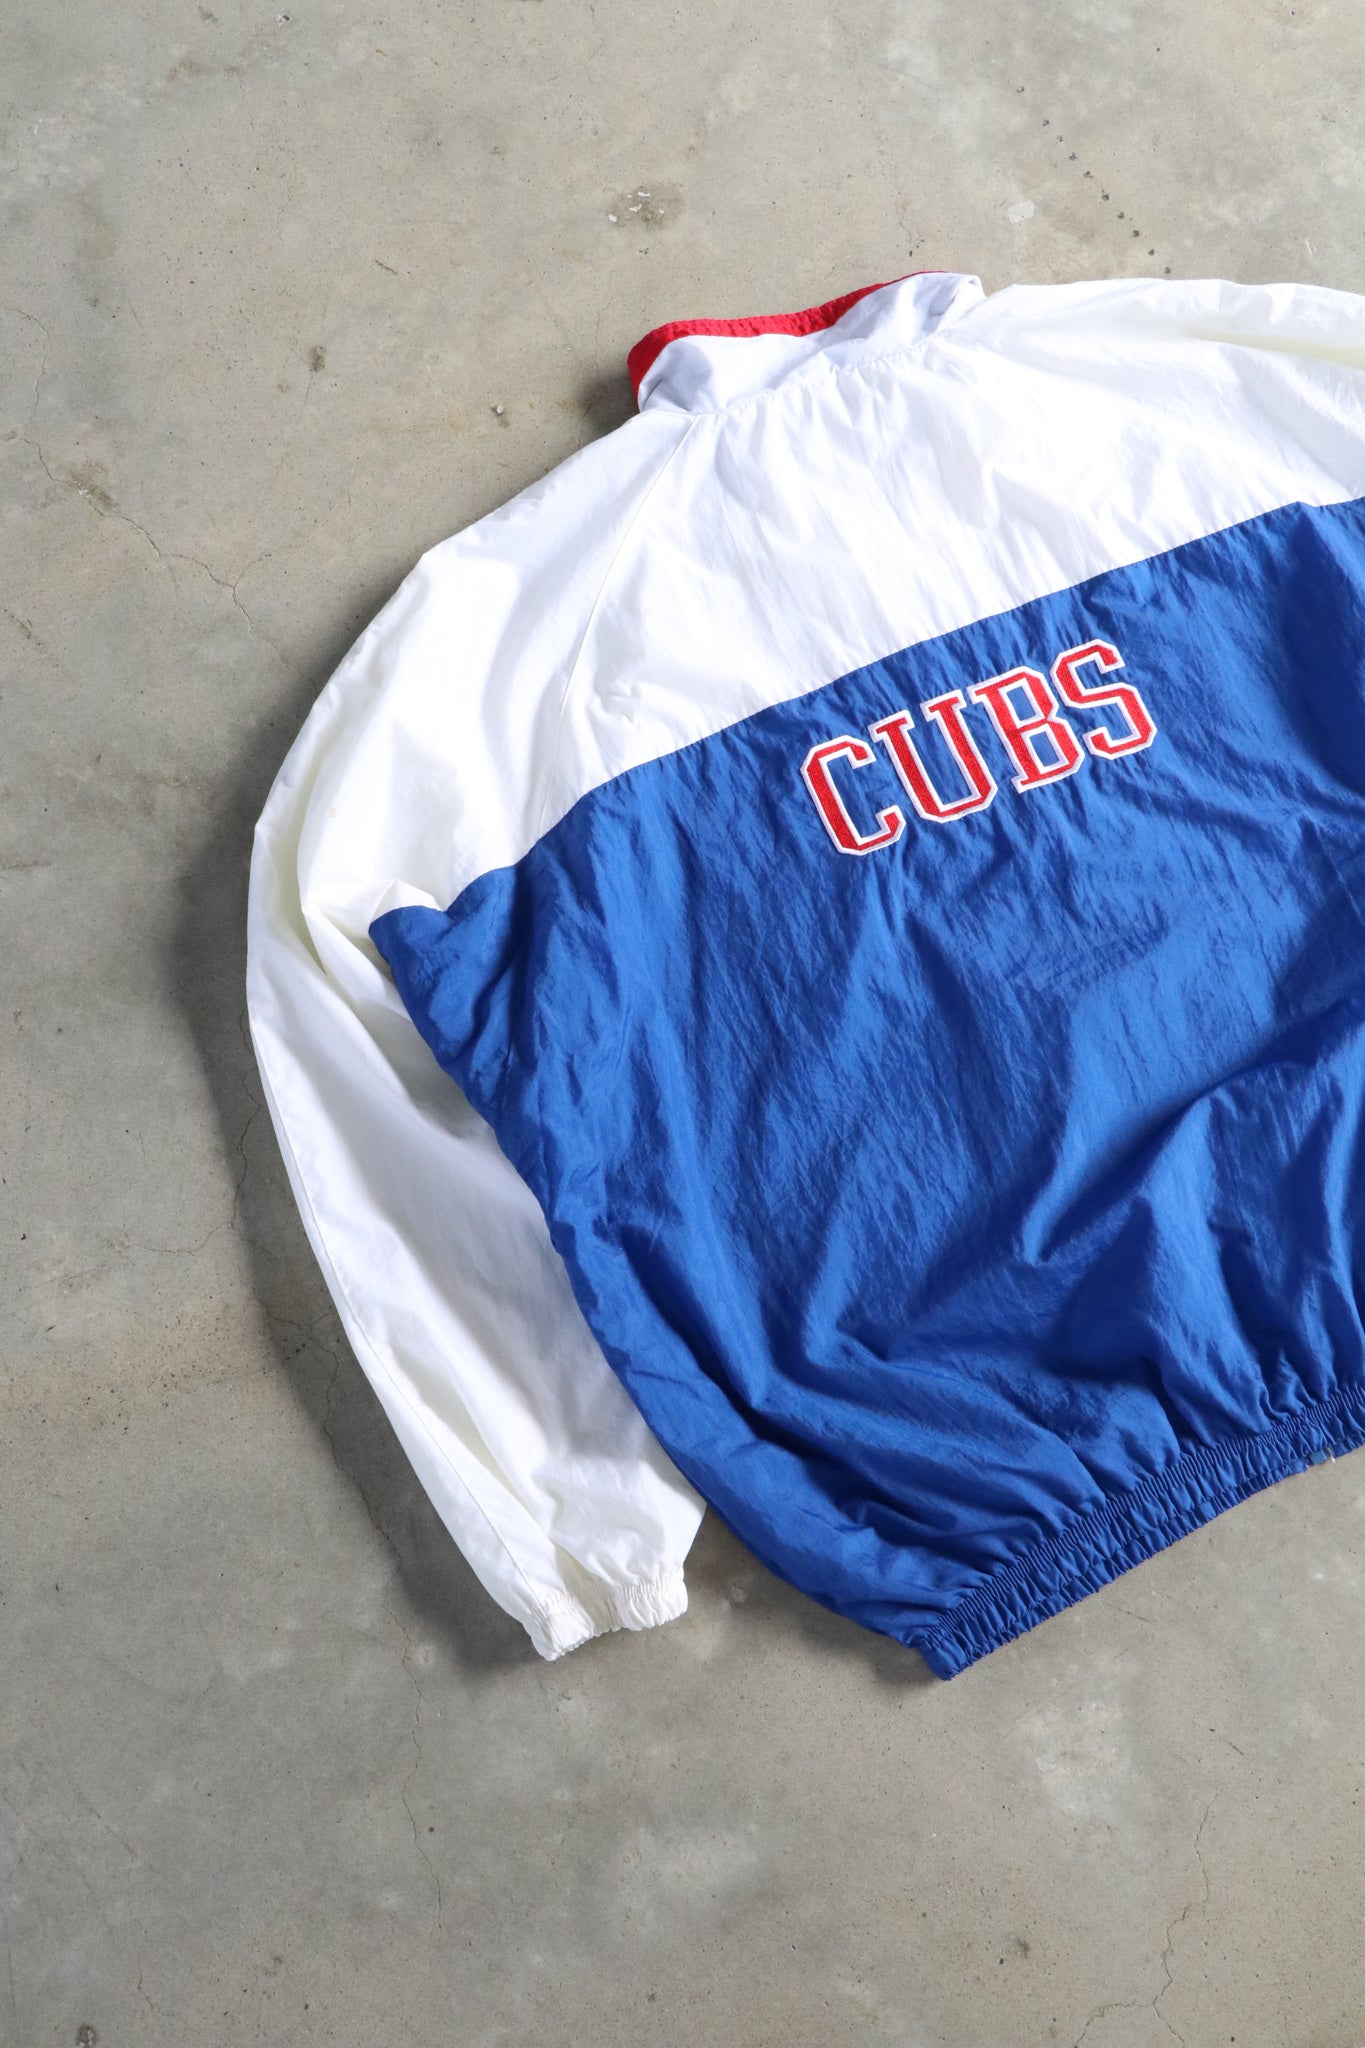 Vintage Cubs Jackets XL